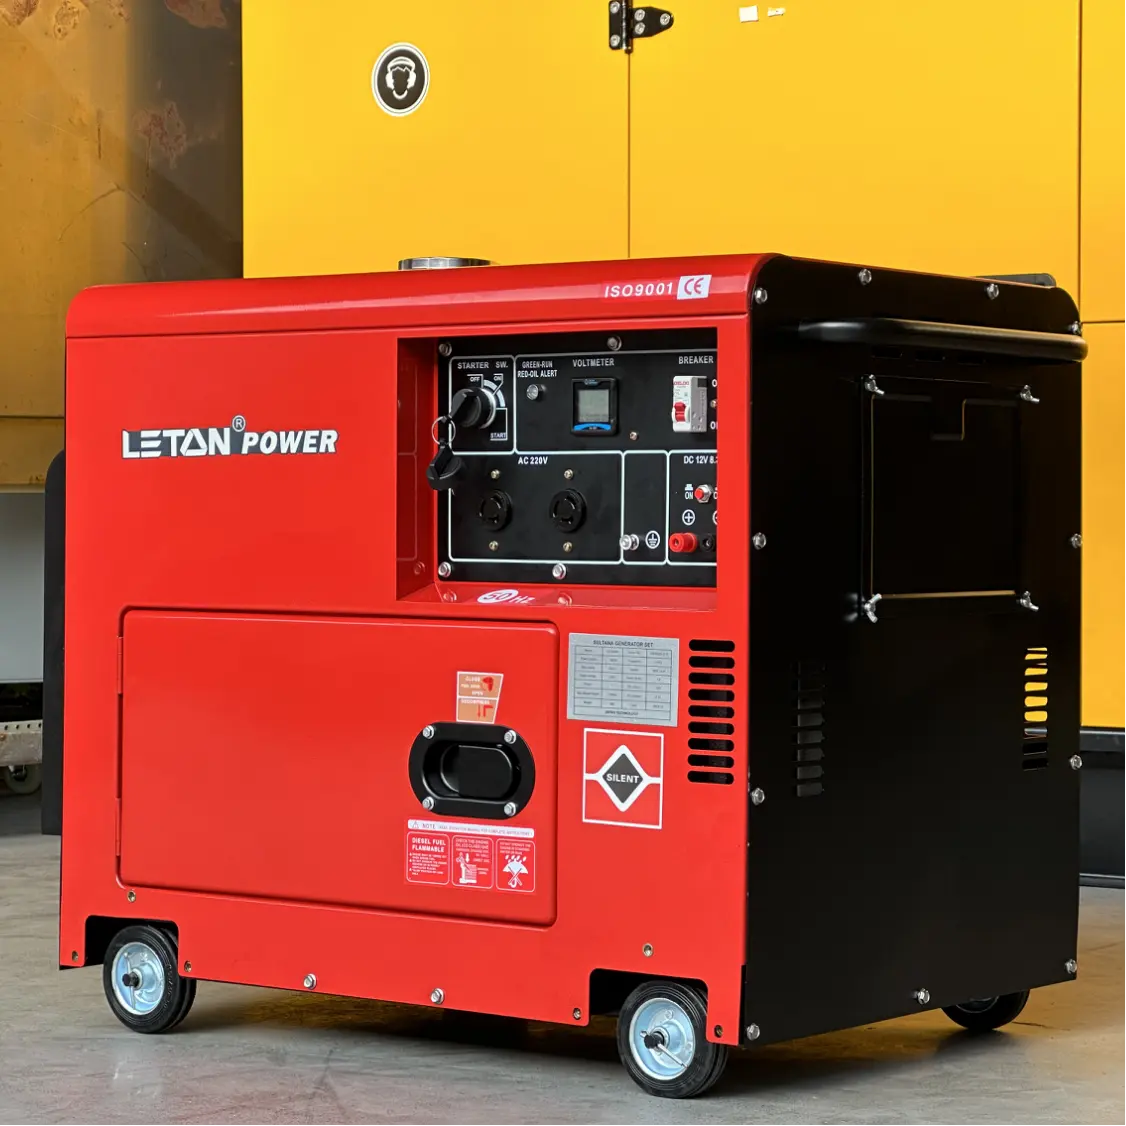 50/60 Hz 10 kva leiser dieselgenerator 1/3 phase schalldichter dieselgenerator für zuhause 5 kva 7 kva 10 kva generatoren für heimgebrauch